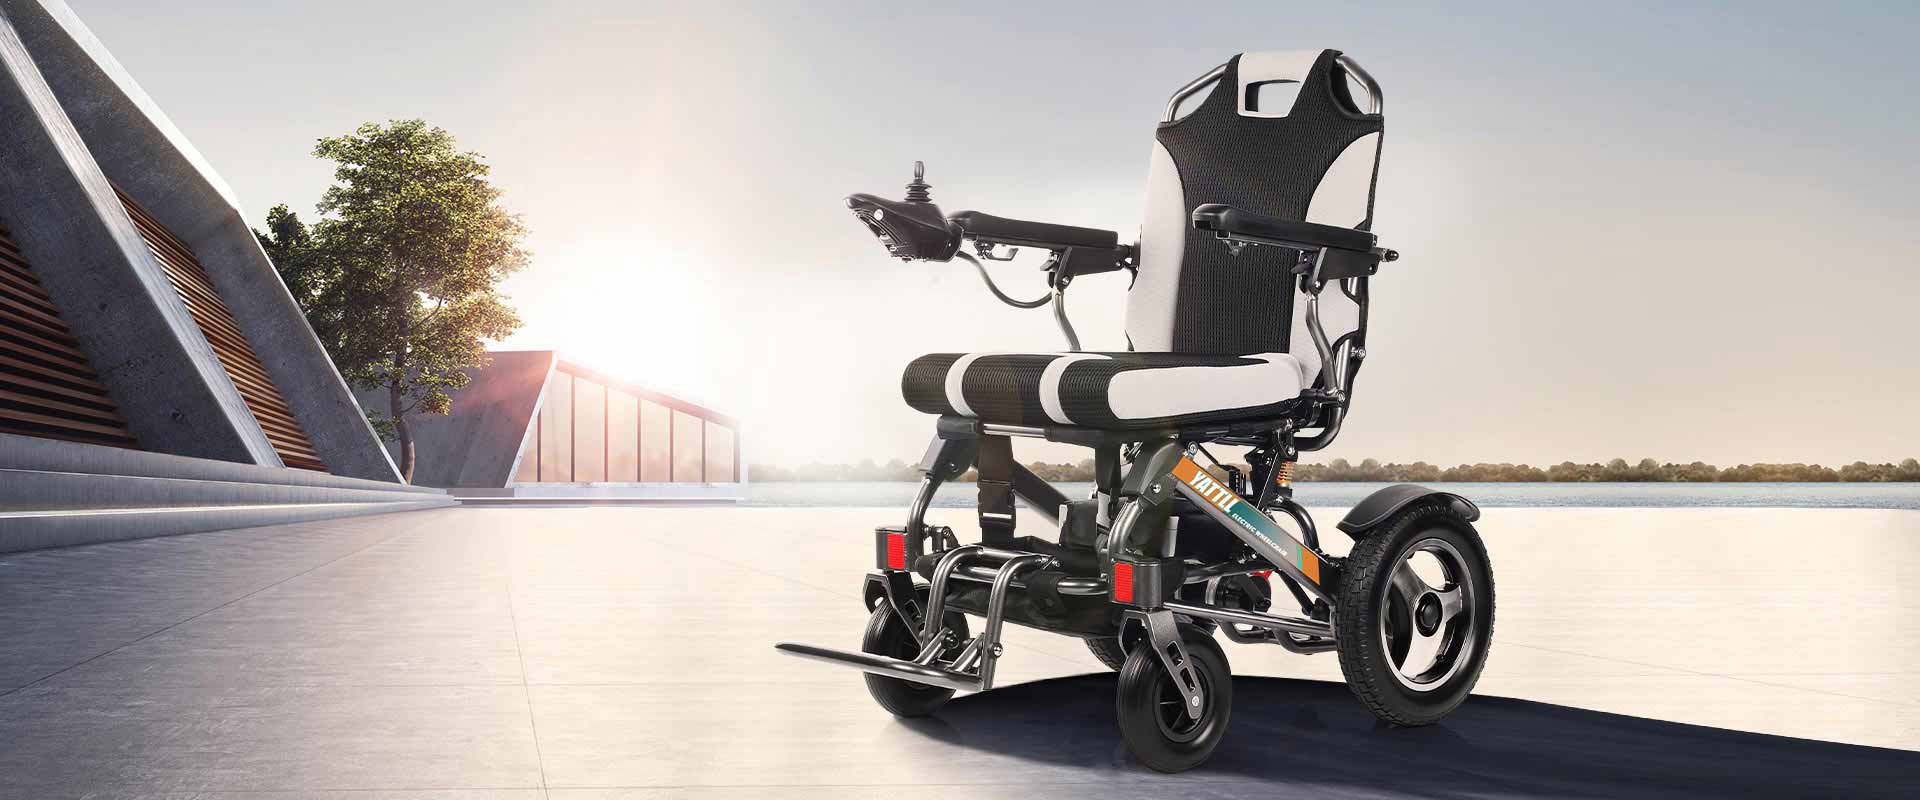 電動車椅子モデル: キャメル願っ YE246